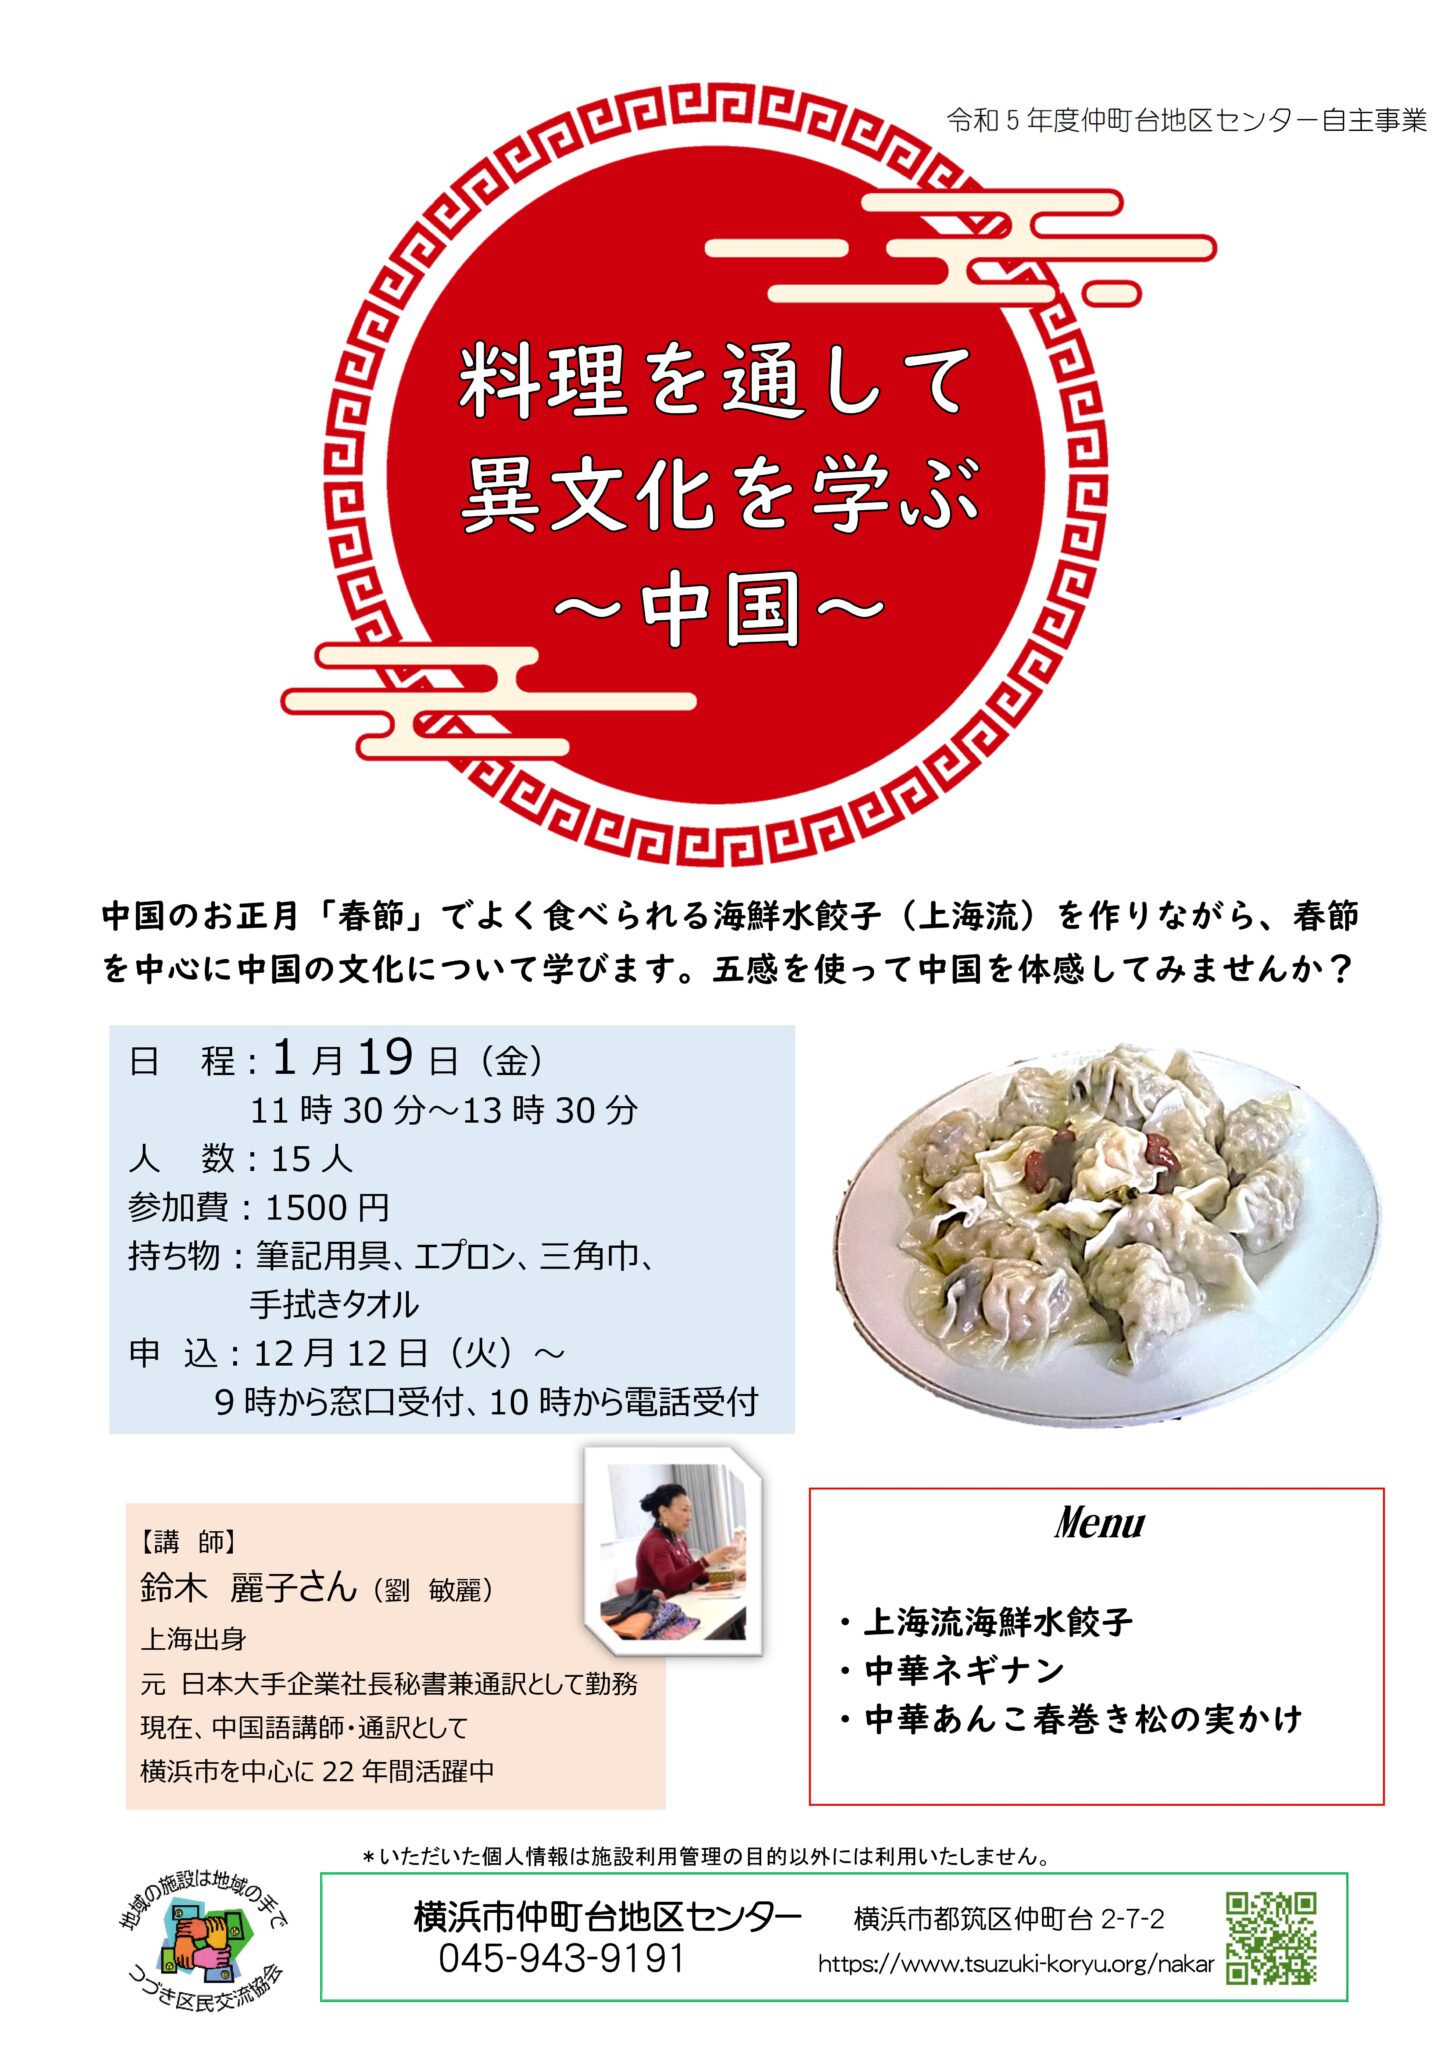 春節でよく食べられる水餃子を作りながら中国の文化について学びます。